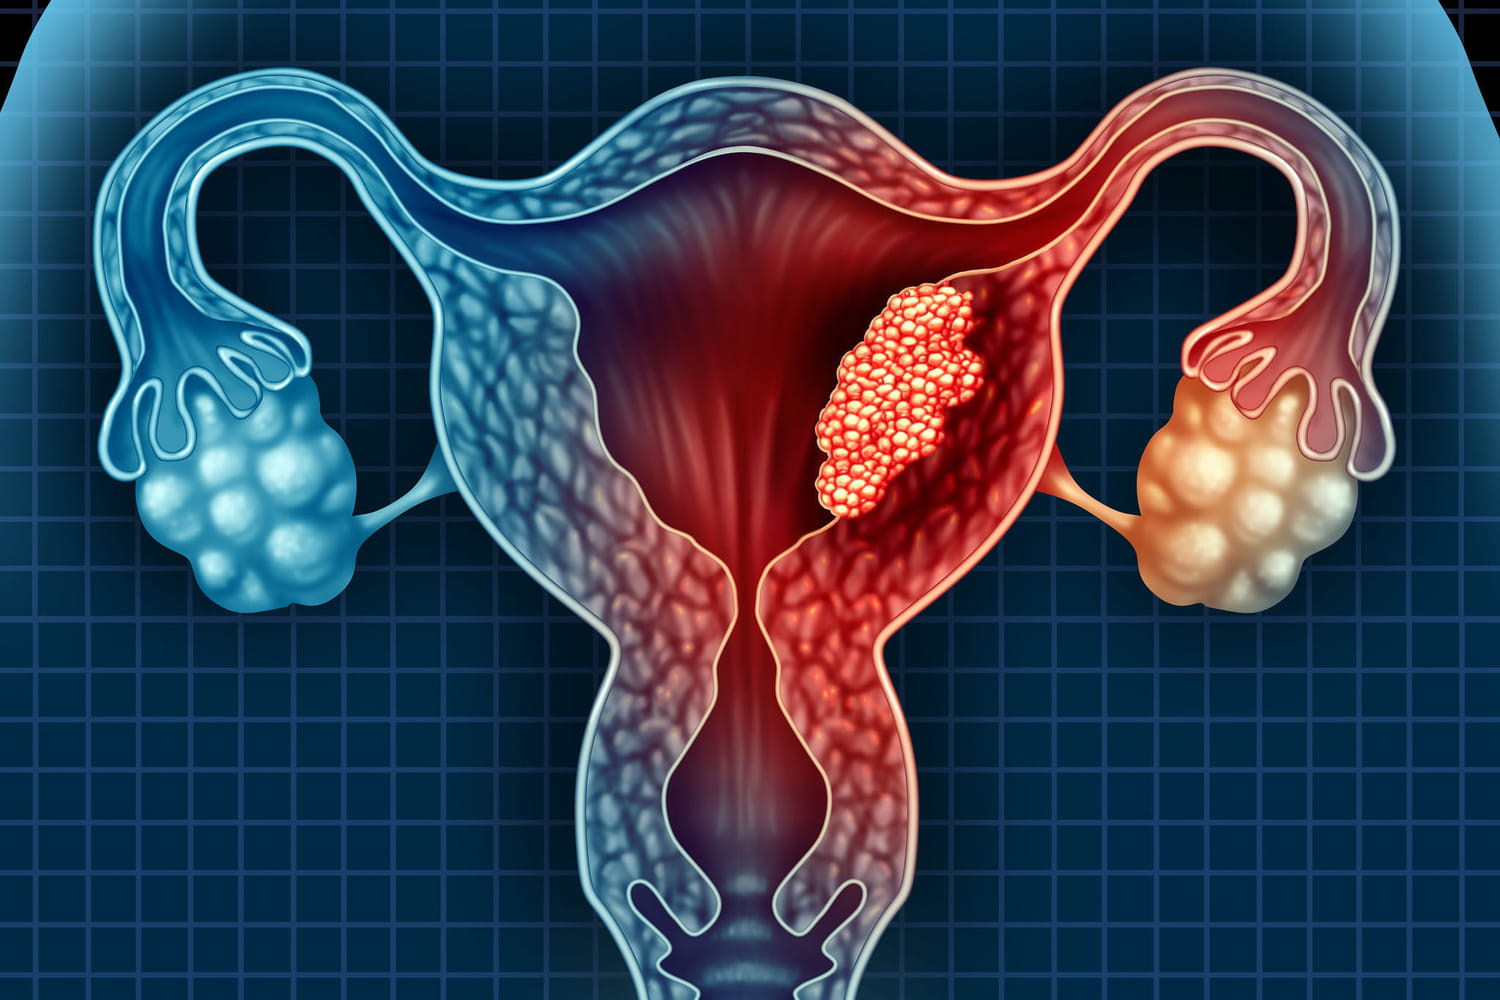 Le cancer de l'utérus